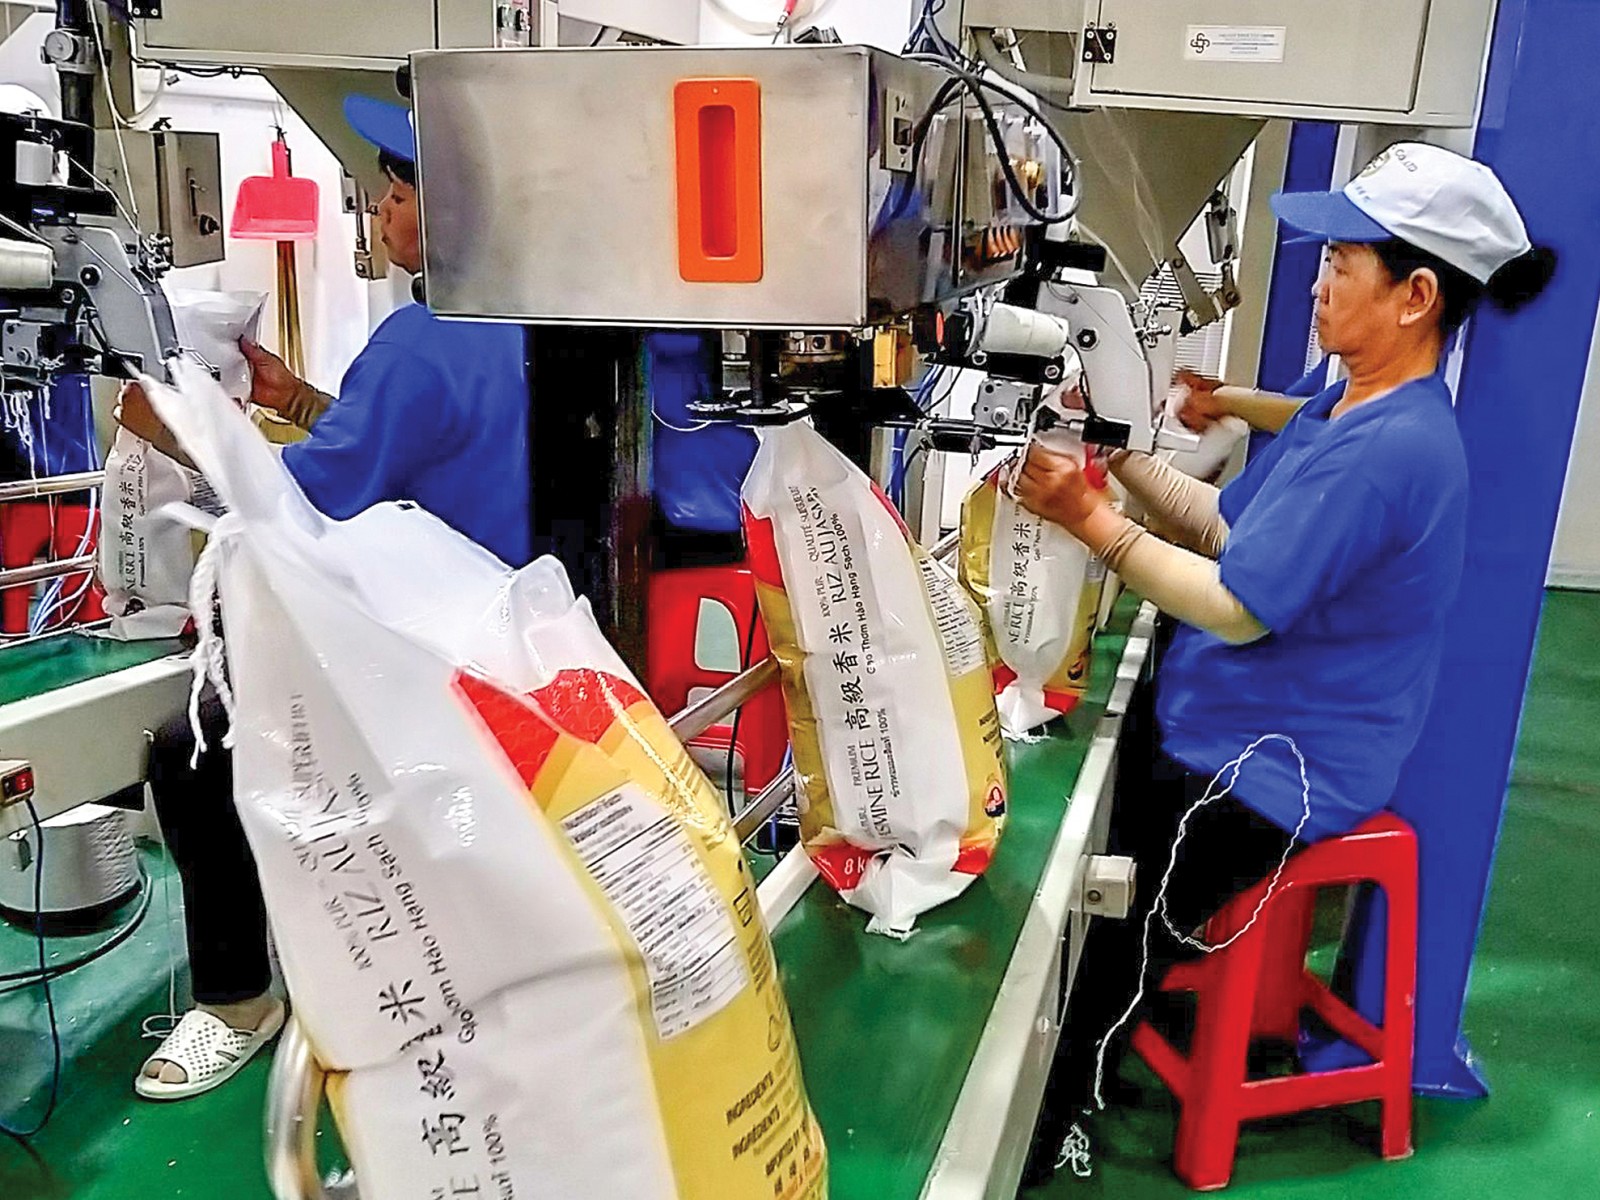 máy hàn miệng túi kết hợp với dây chuyền sản xuất gạo, thực phẩm, bột mì